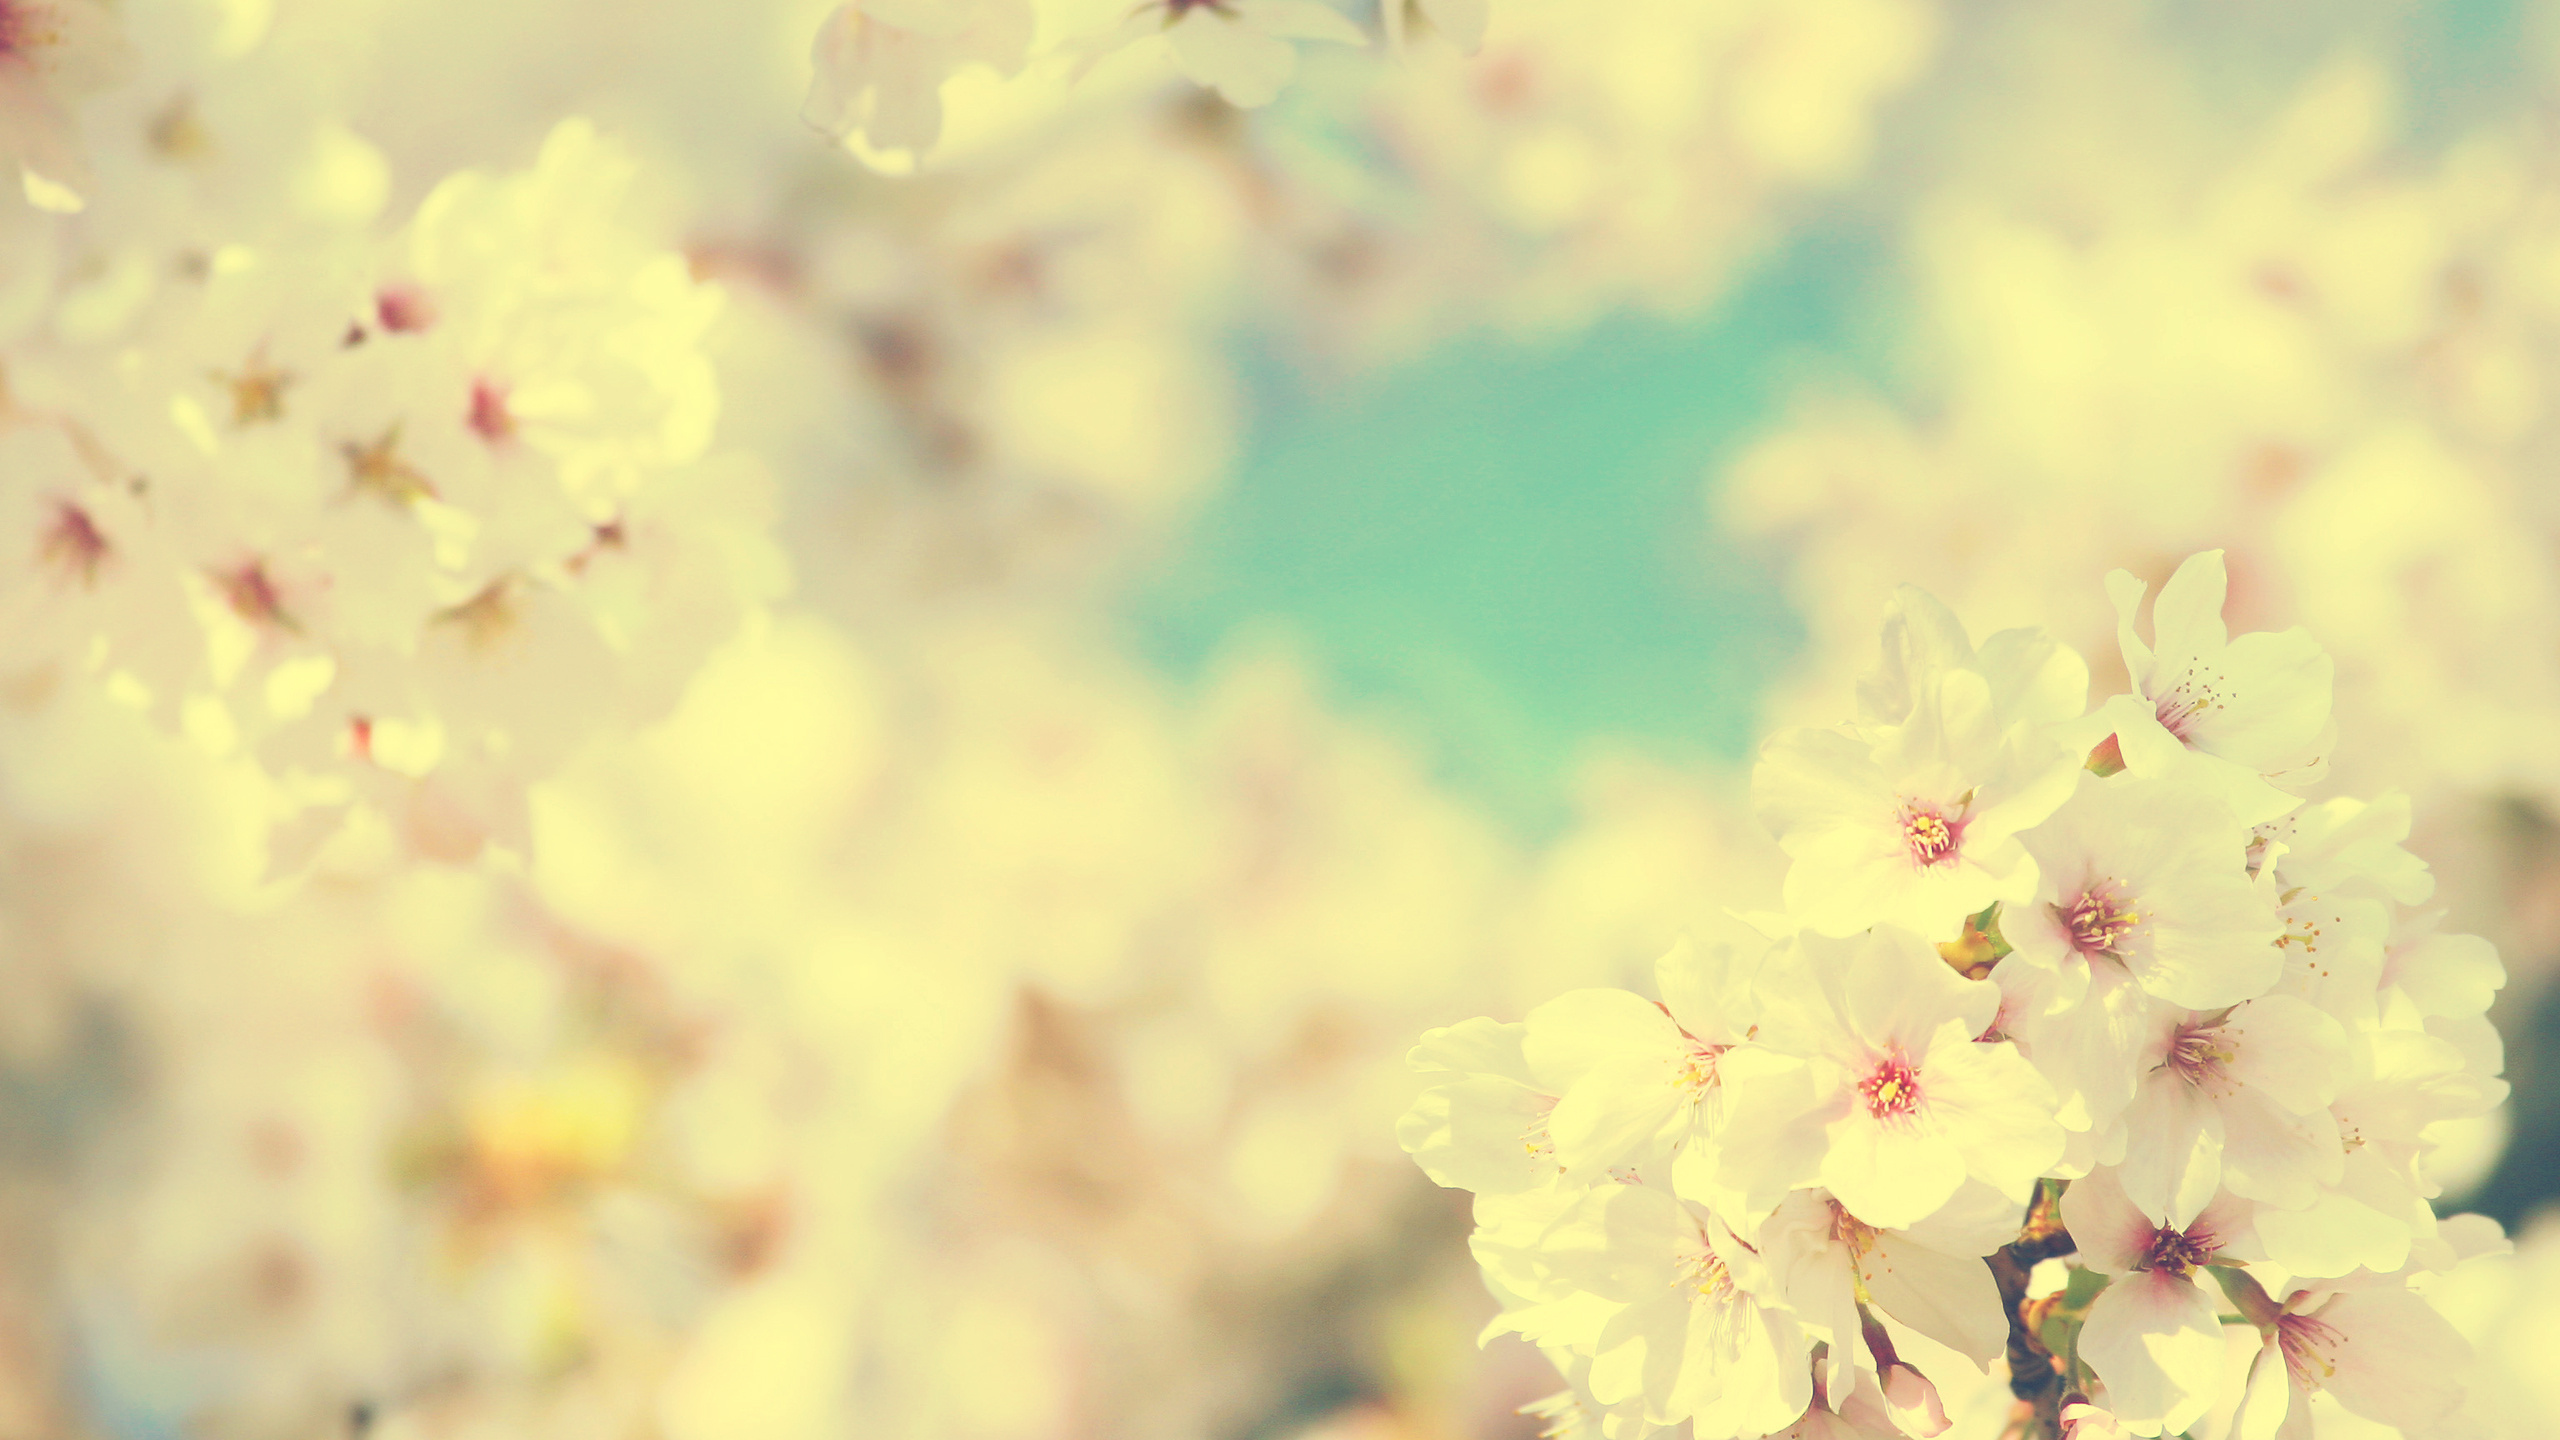 樱花, 弹簧, 开花, 粉红色, 阳光 壁纸 2560x1440 允许